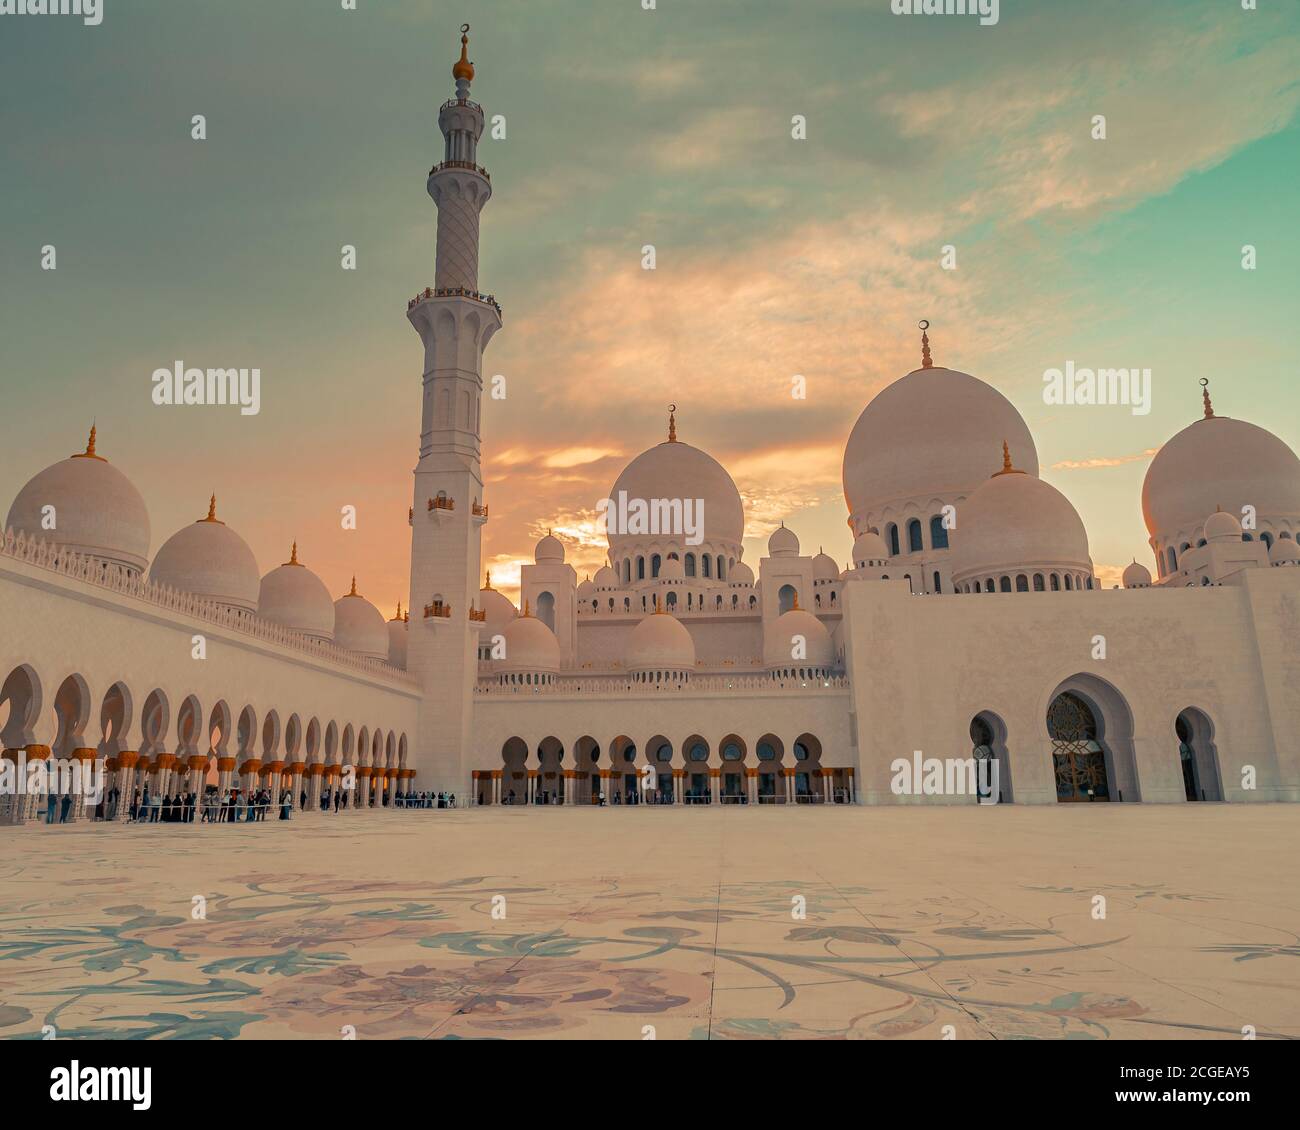 Sheikh Zayed Grand Mosque, Abu Dhabi, UAE Stock Photo - Alamy